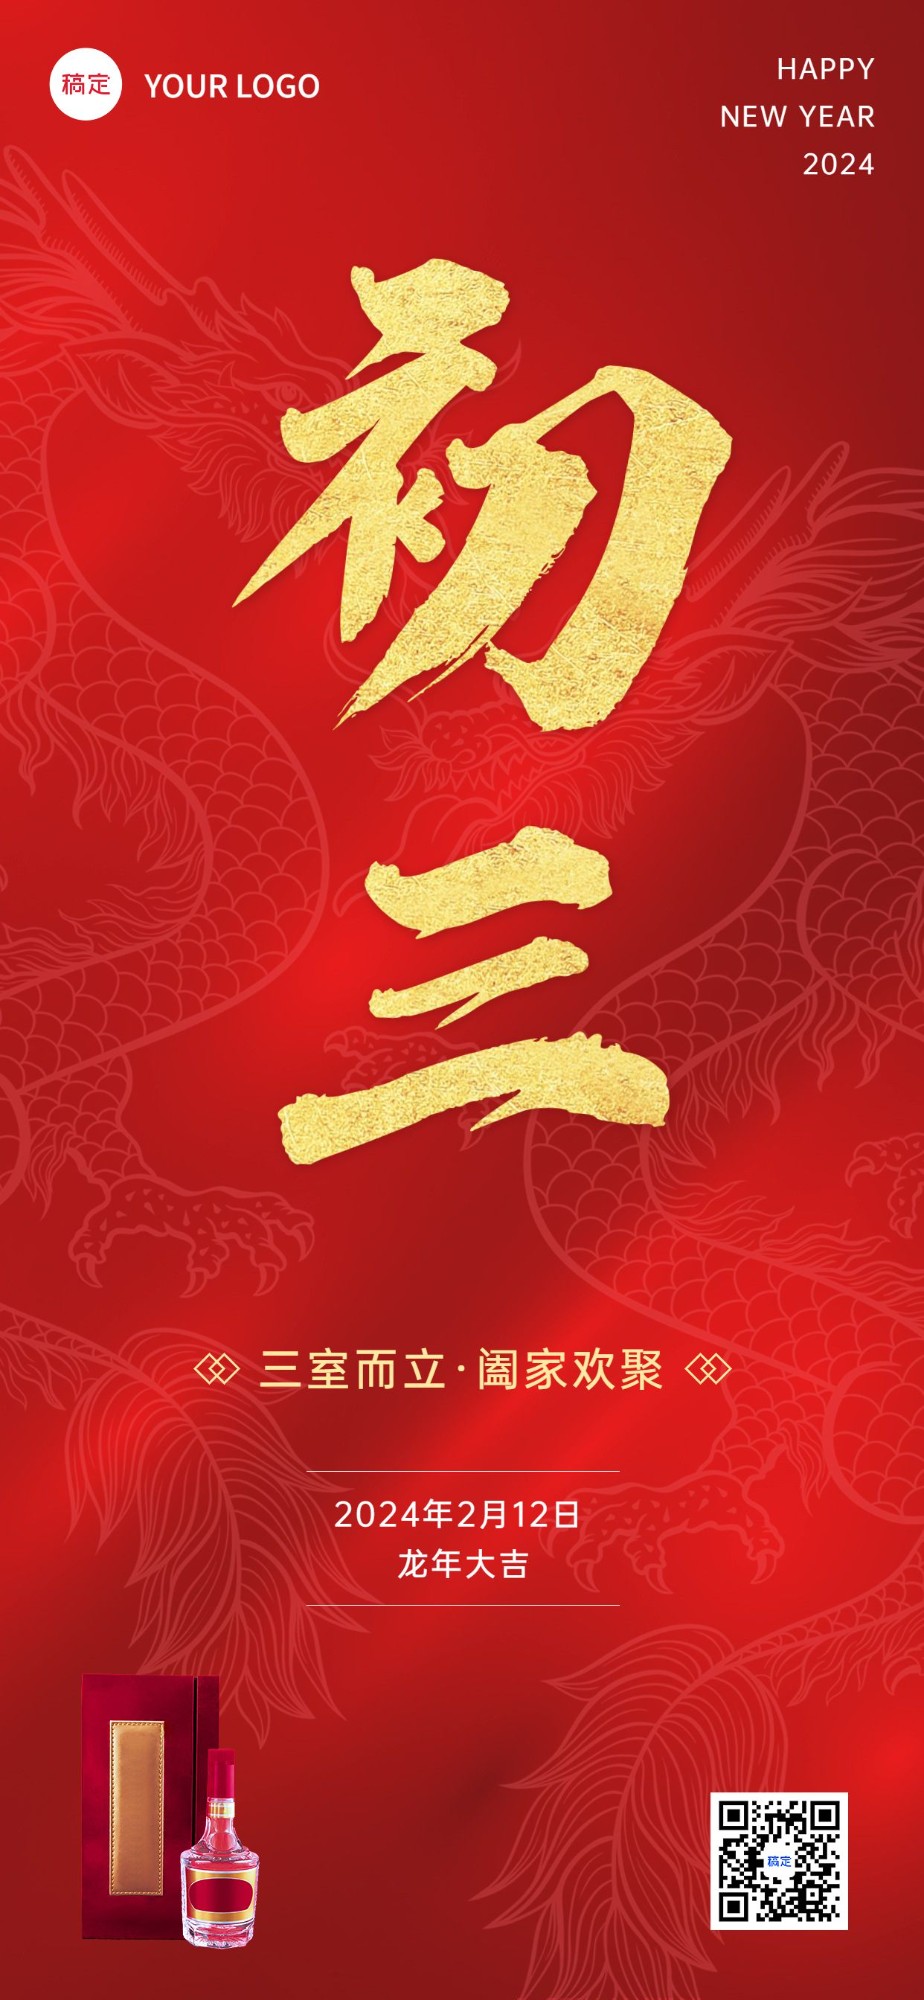 春节龙年初三节日祝福酒产品展示中式喜庆感全屏竖版海报预览效果